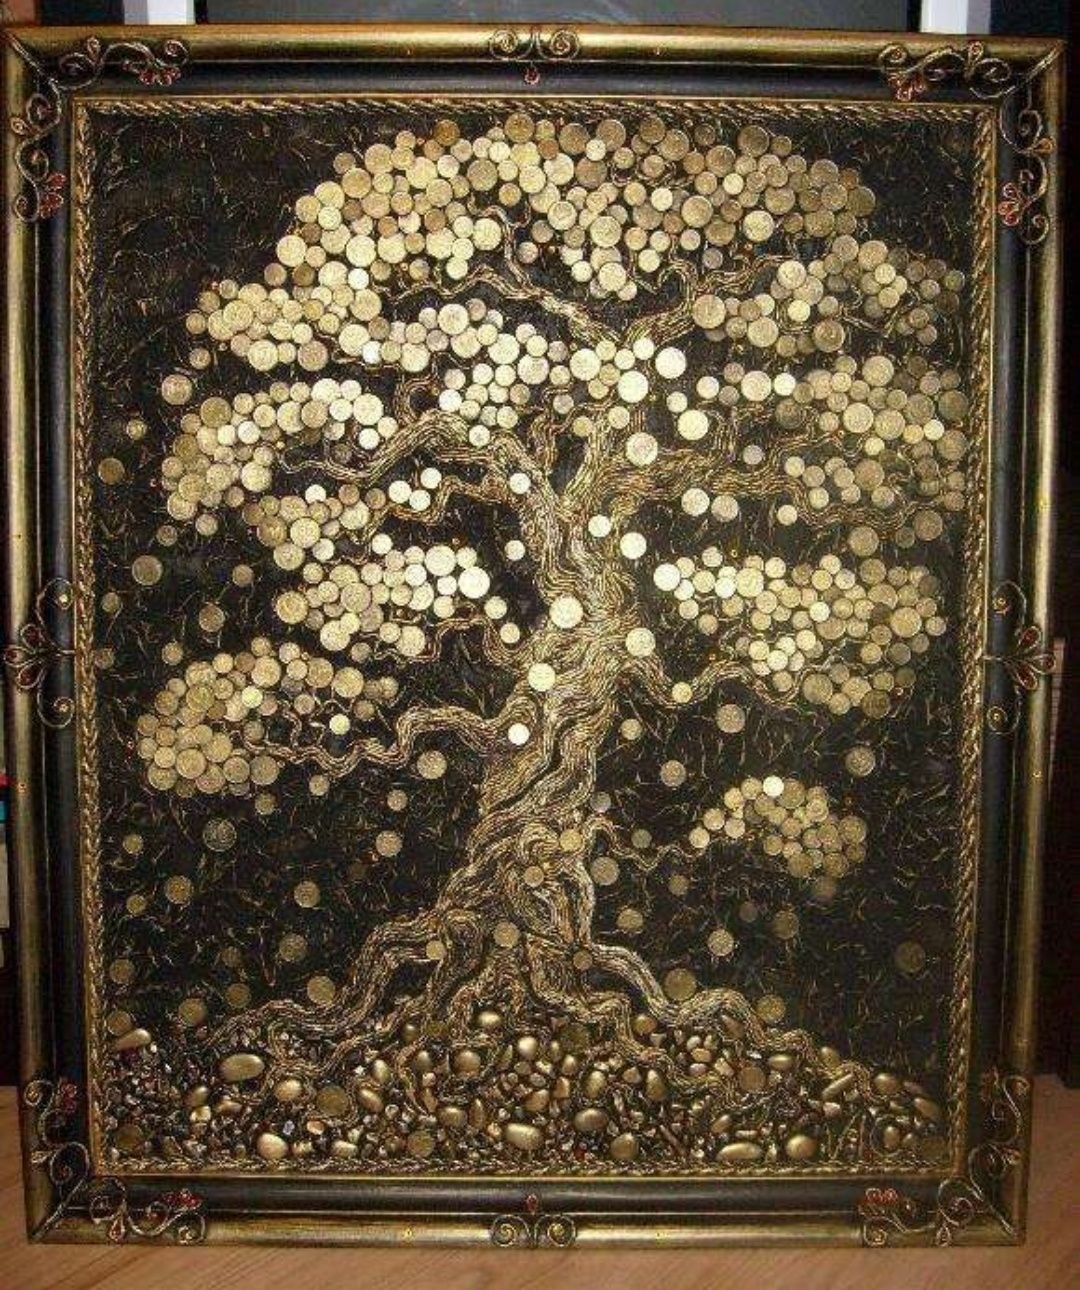 Картина золотое дерево счастья, денежное дерево, подарок на свадьбу